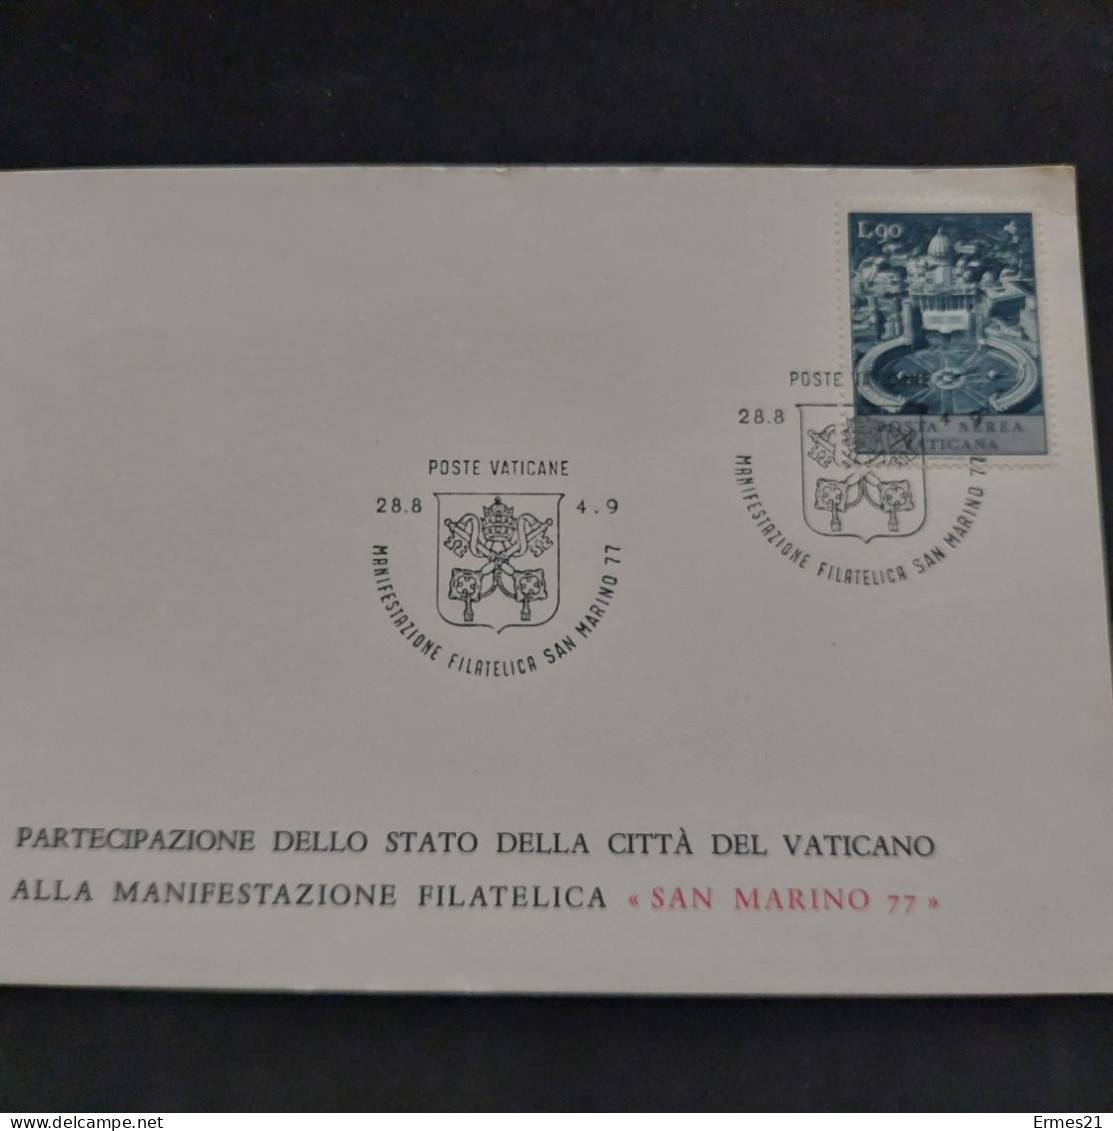 Governatorato  Poste Vaticane 1977. Partecipazione Città Del Vaticano Manifestazione Filatelica "San Marino 77". Nuove. - Abarten